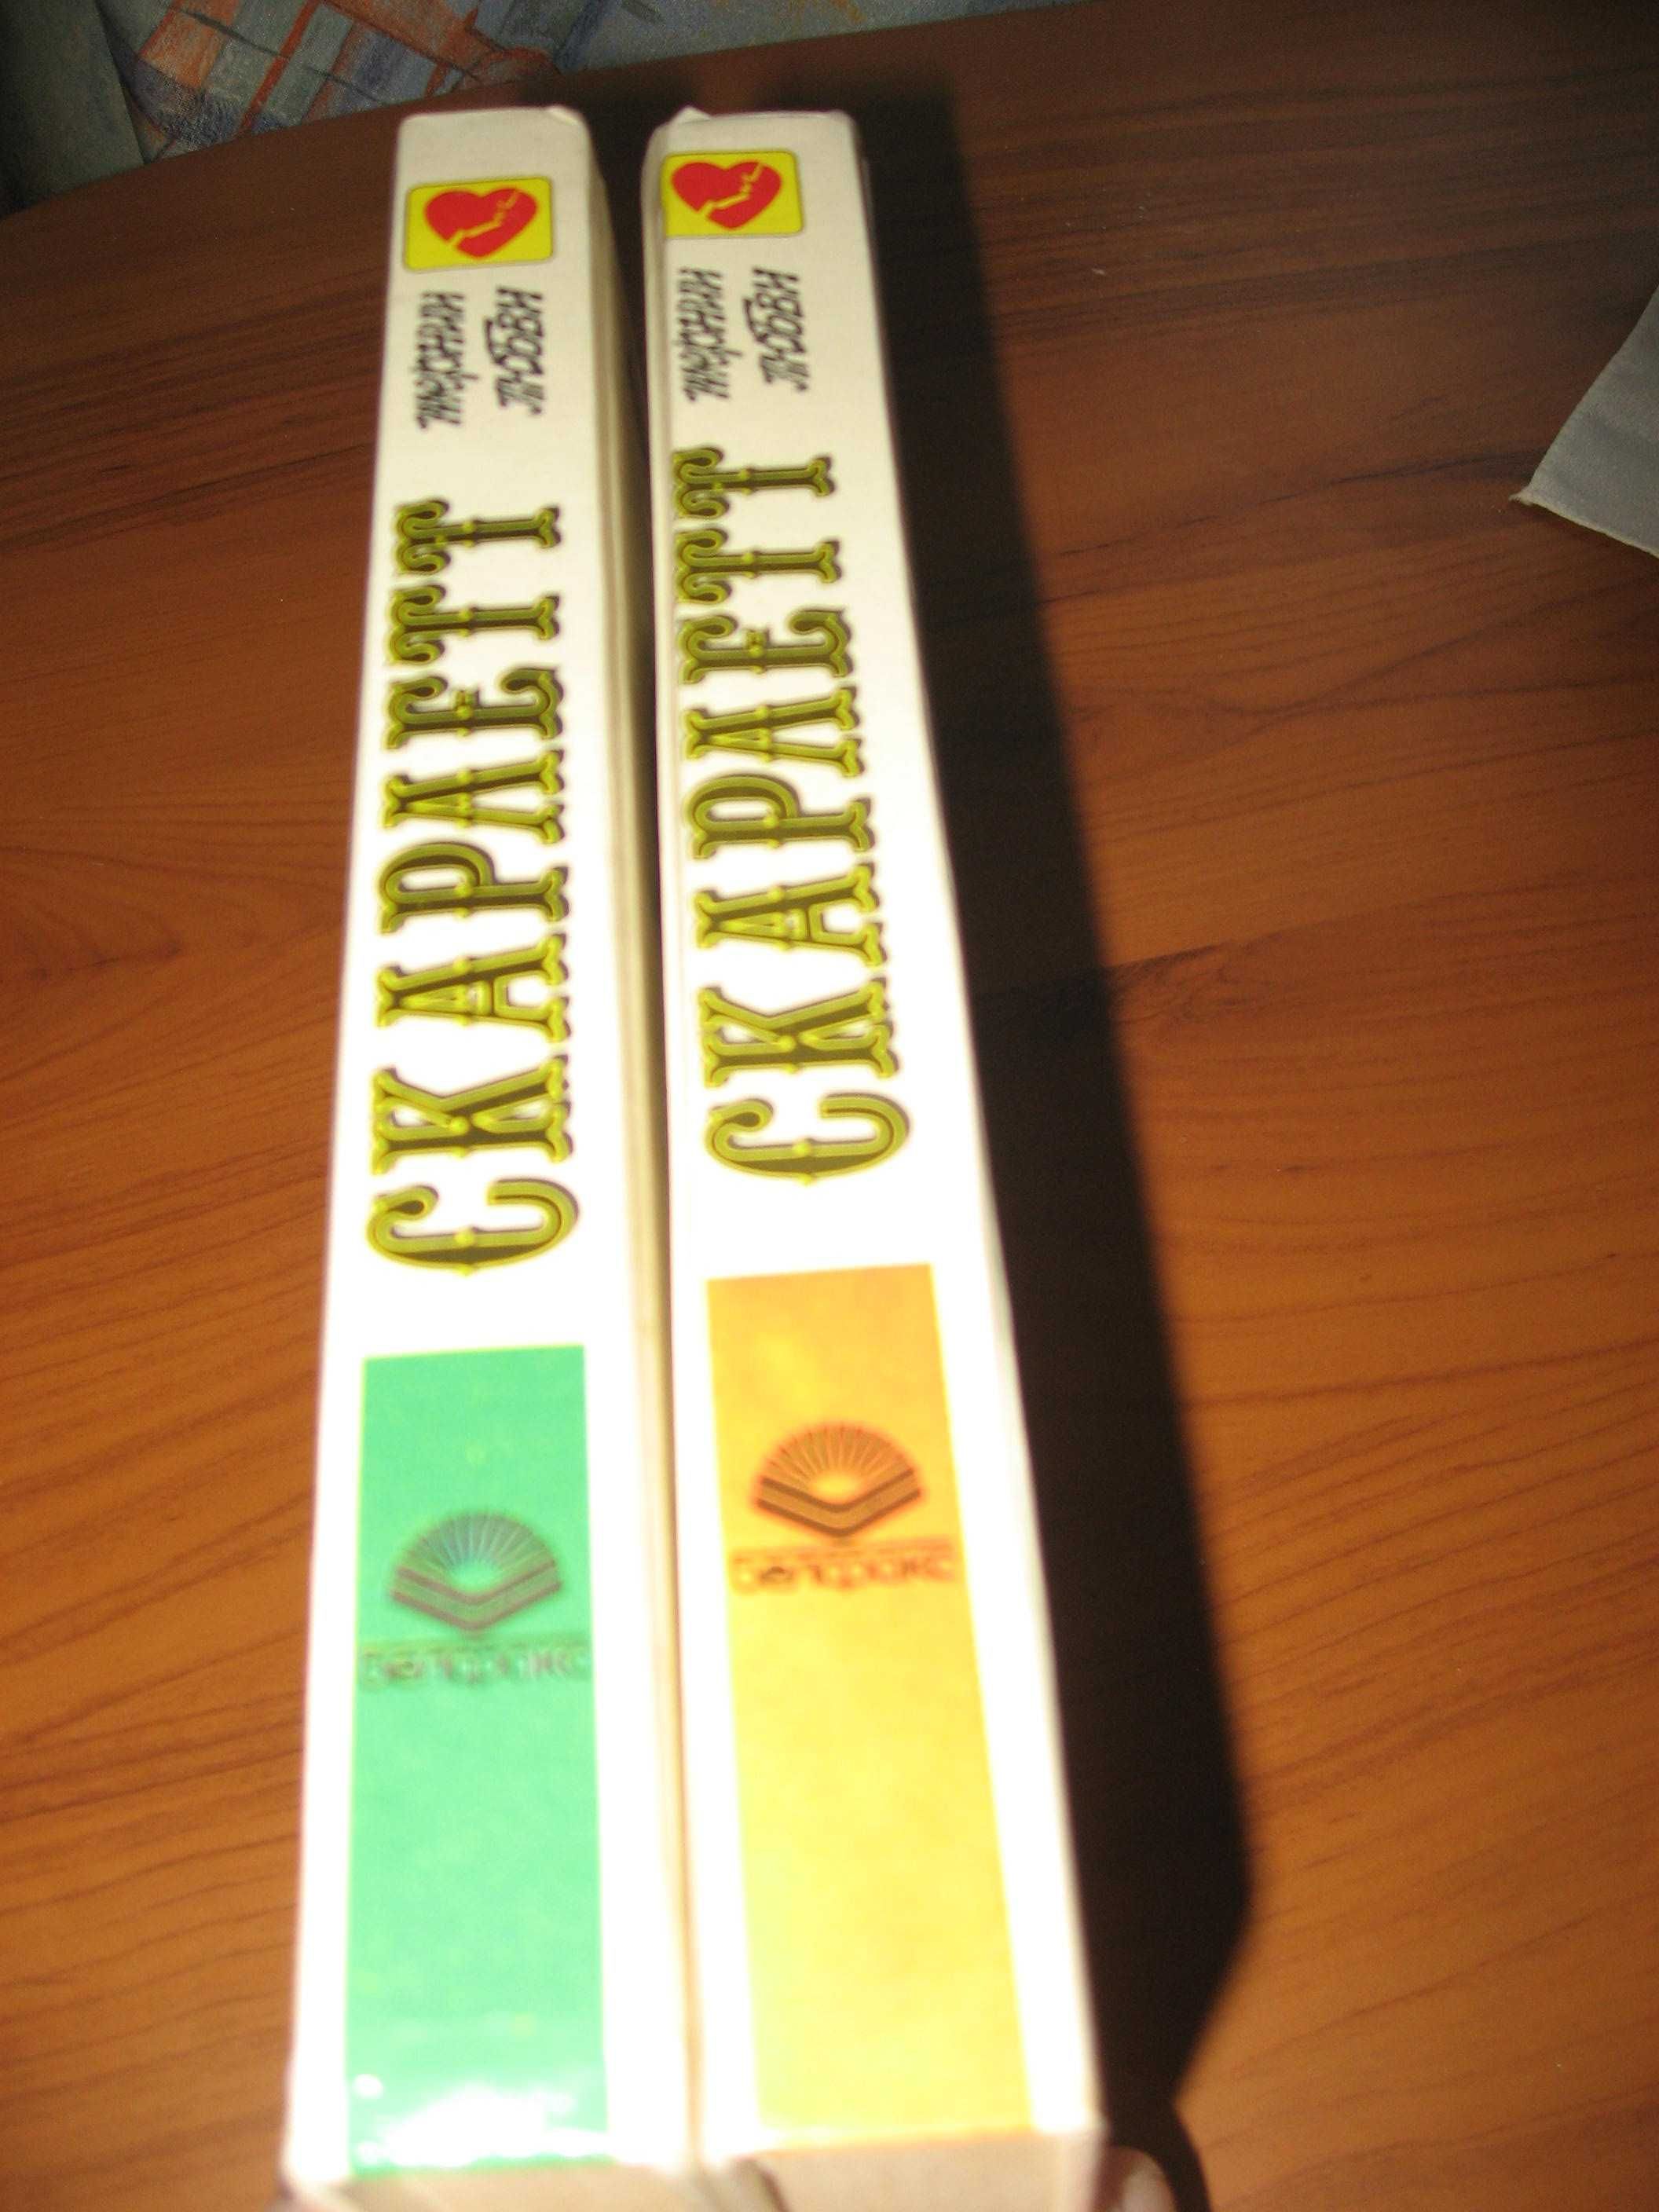 Александра Риплей. Роман “ Скарлетт”.  2 видеокассеты и 2 книги.